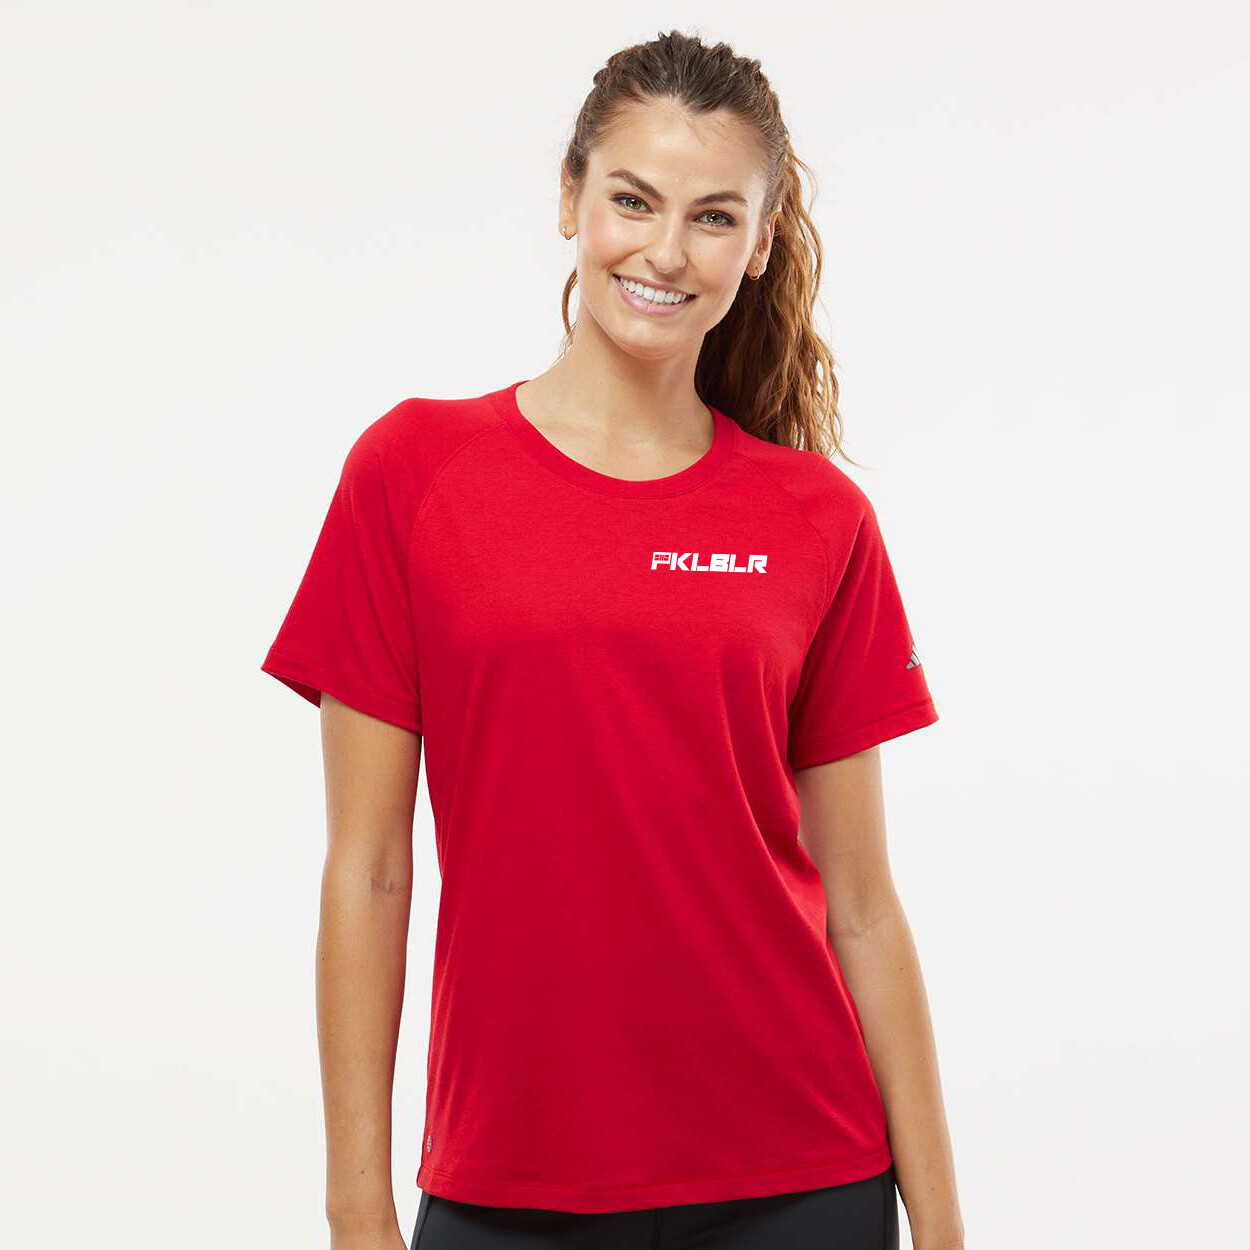 Adidas Women's Pickleball T-Shirt